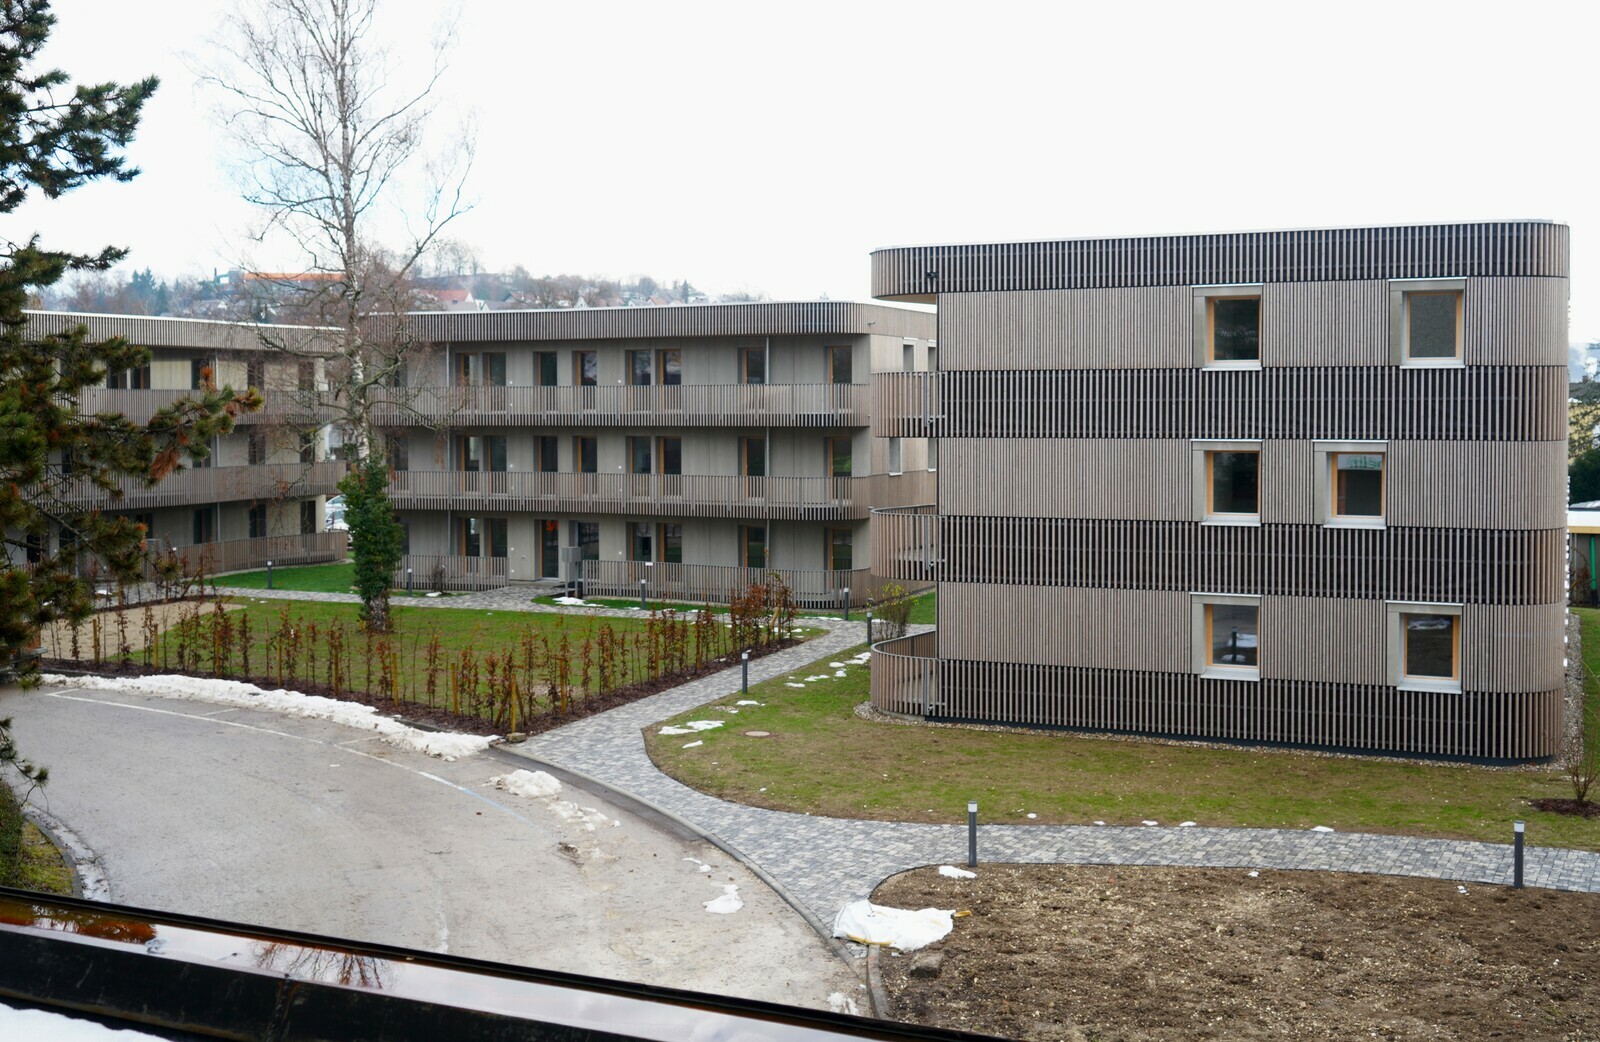 Durch sichere Planung und gute Partnerschaft konnte der Neubau realisiert werden. Foto: Natascha Schröm